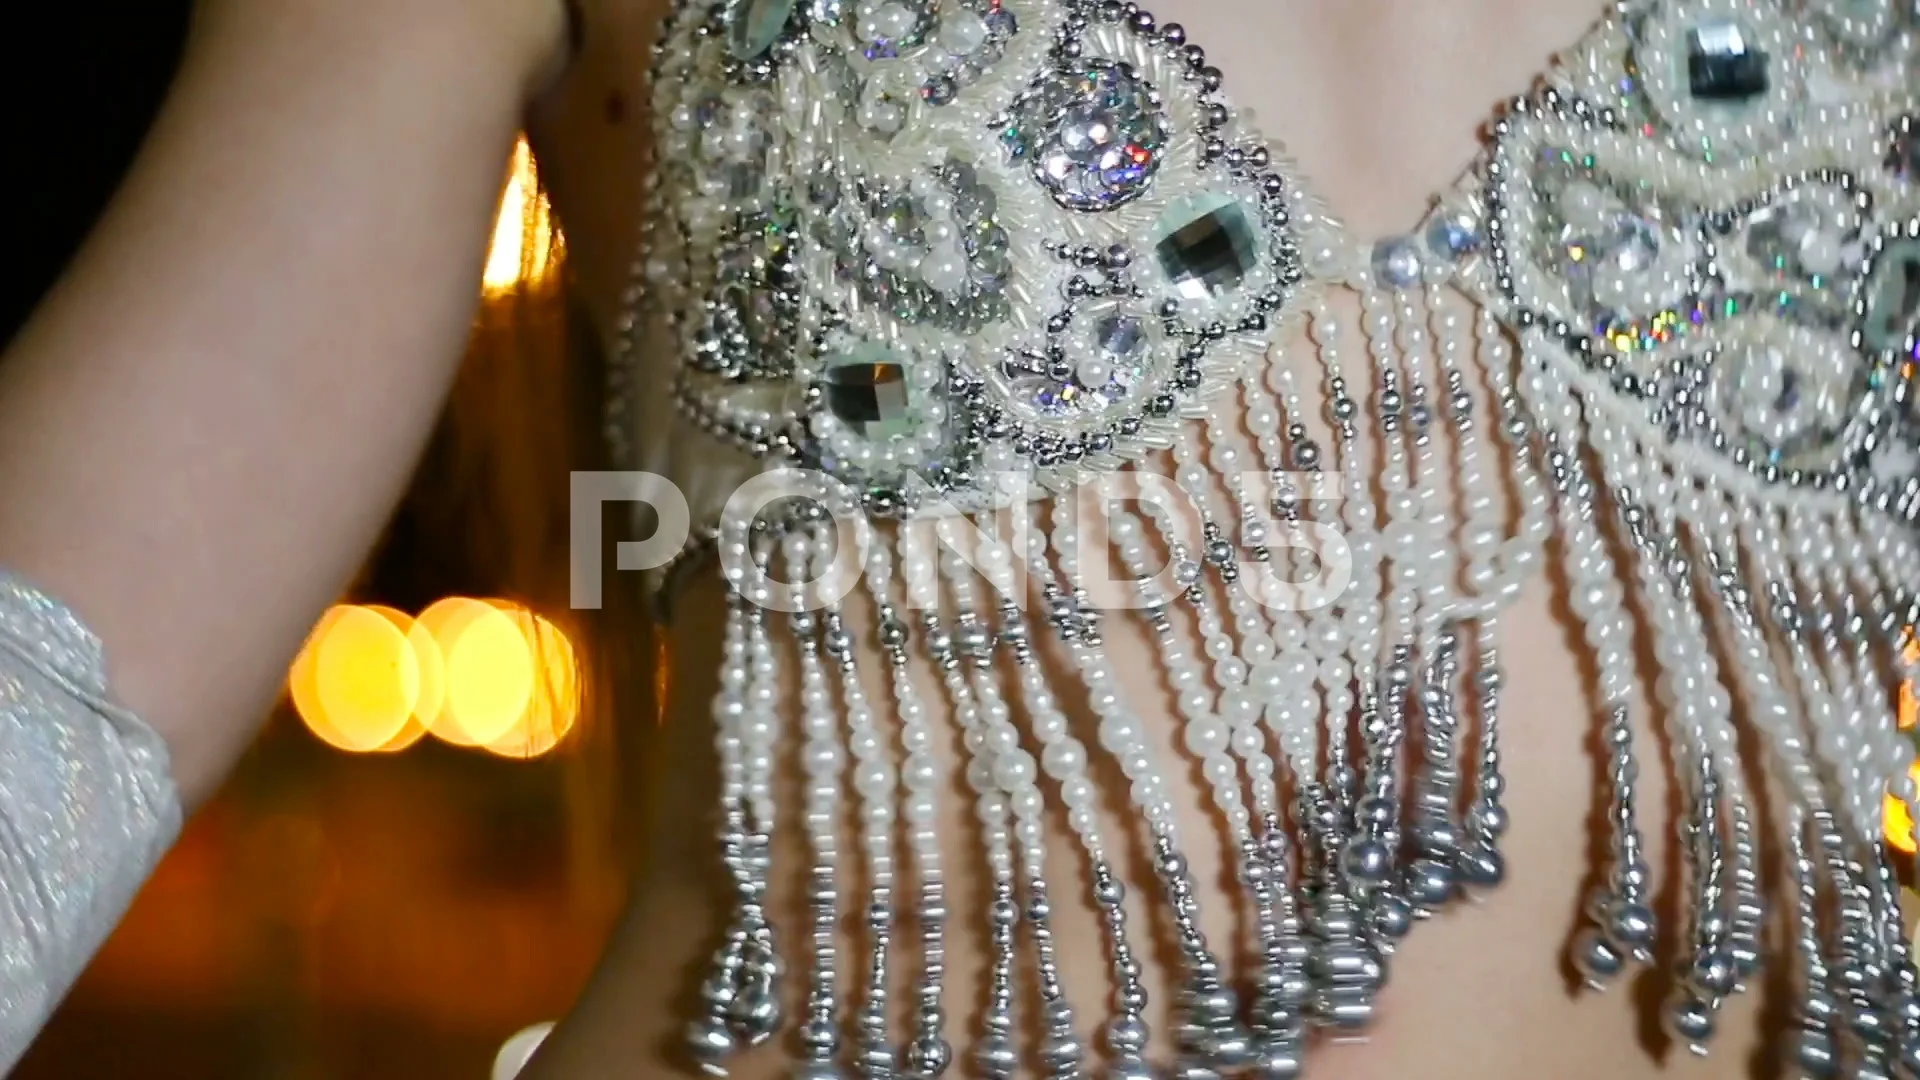 beautiful woman in oriental bra is danci, Stock Video